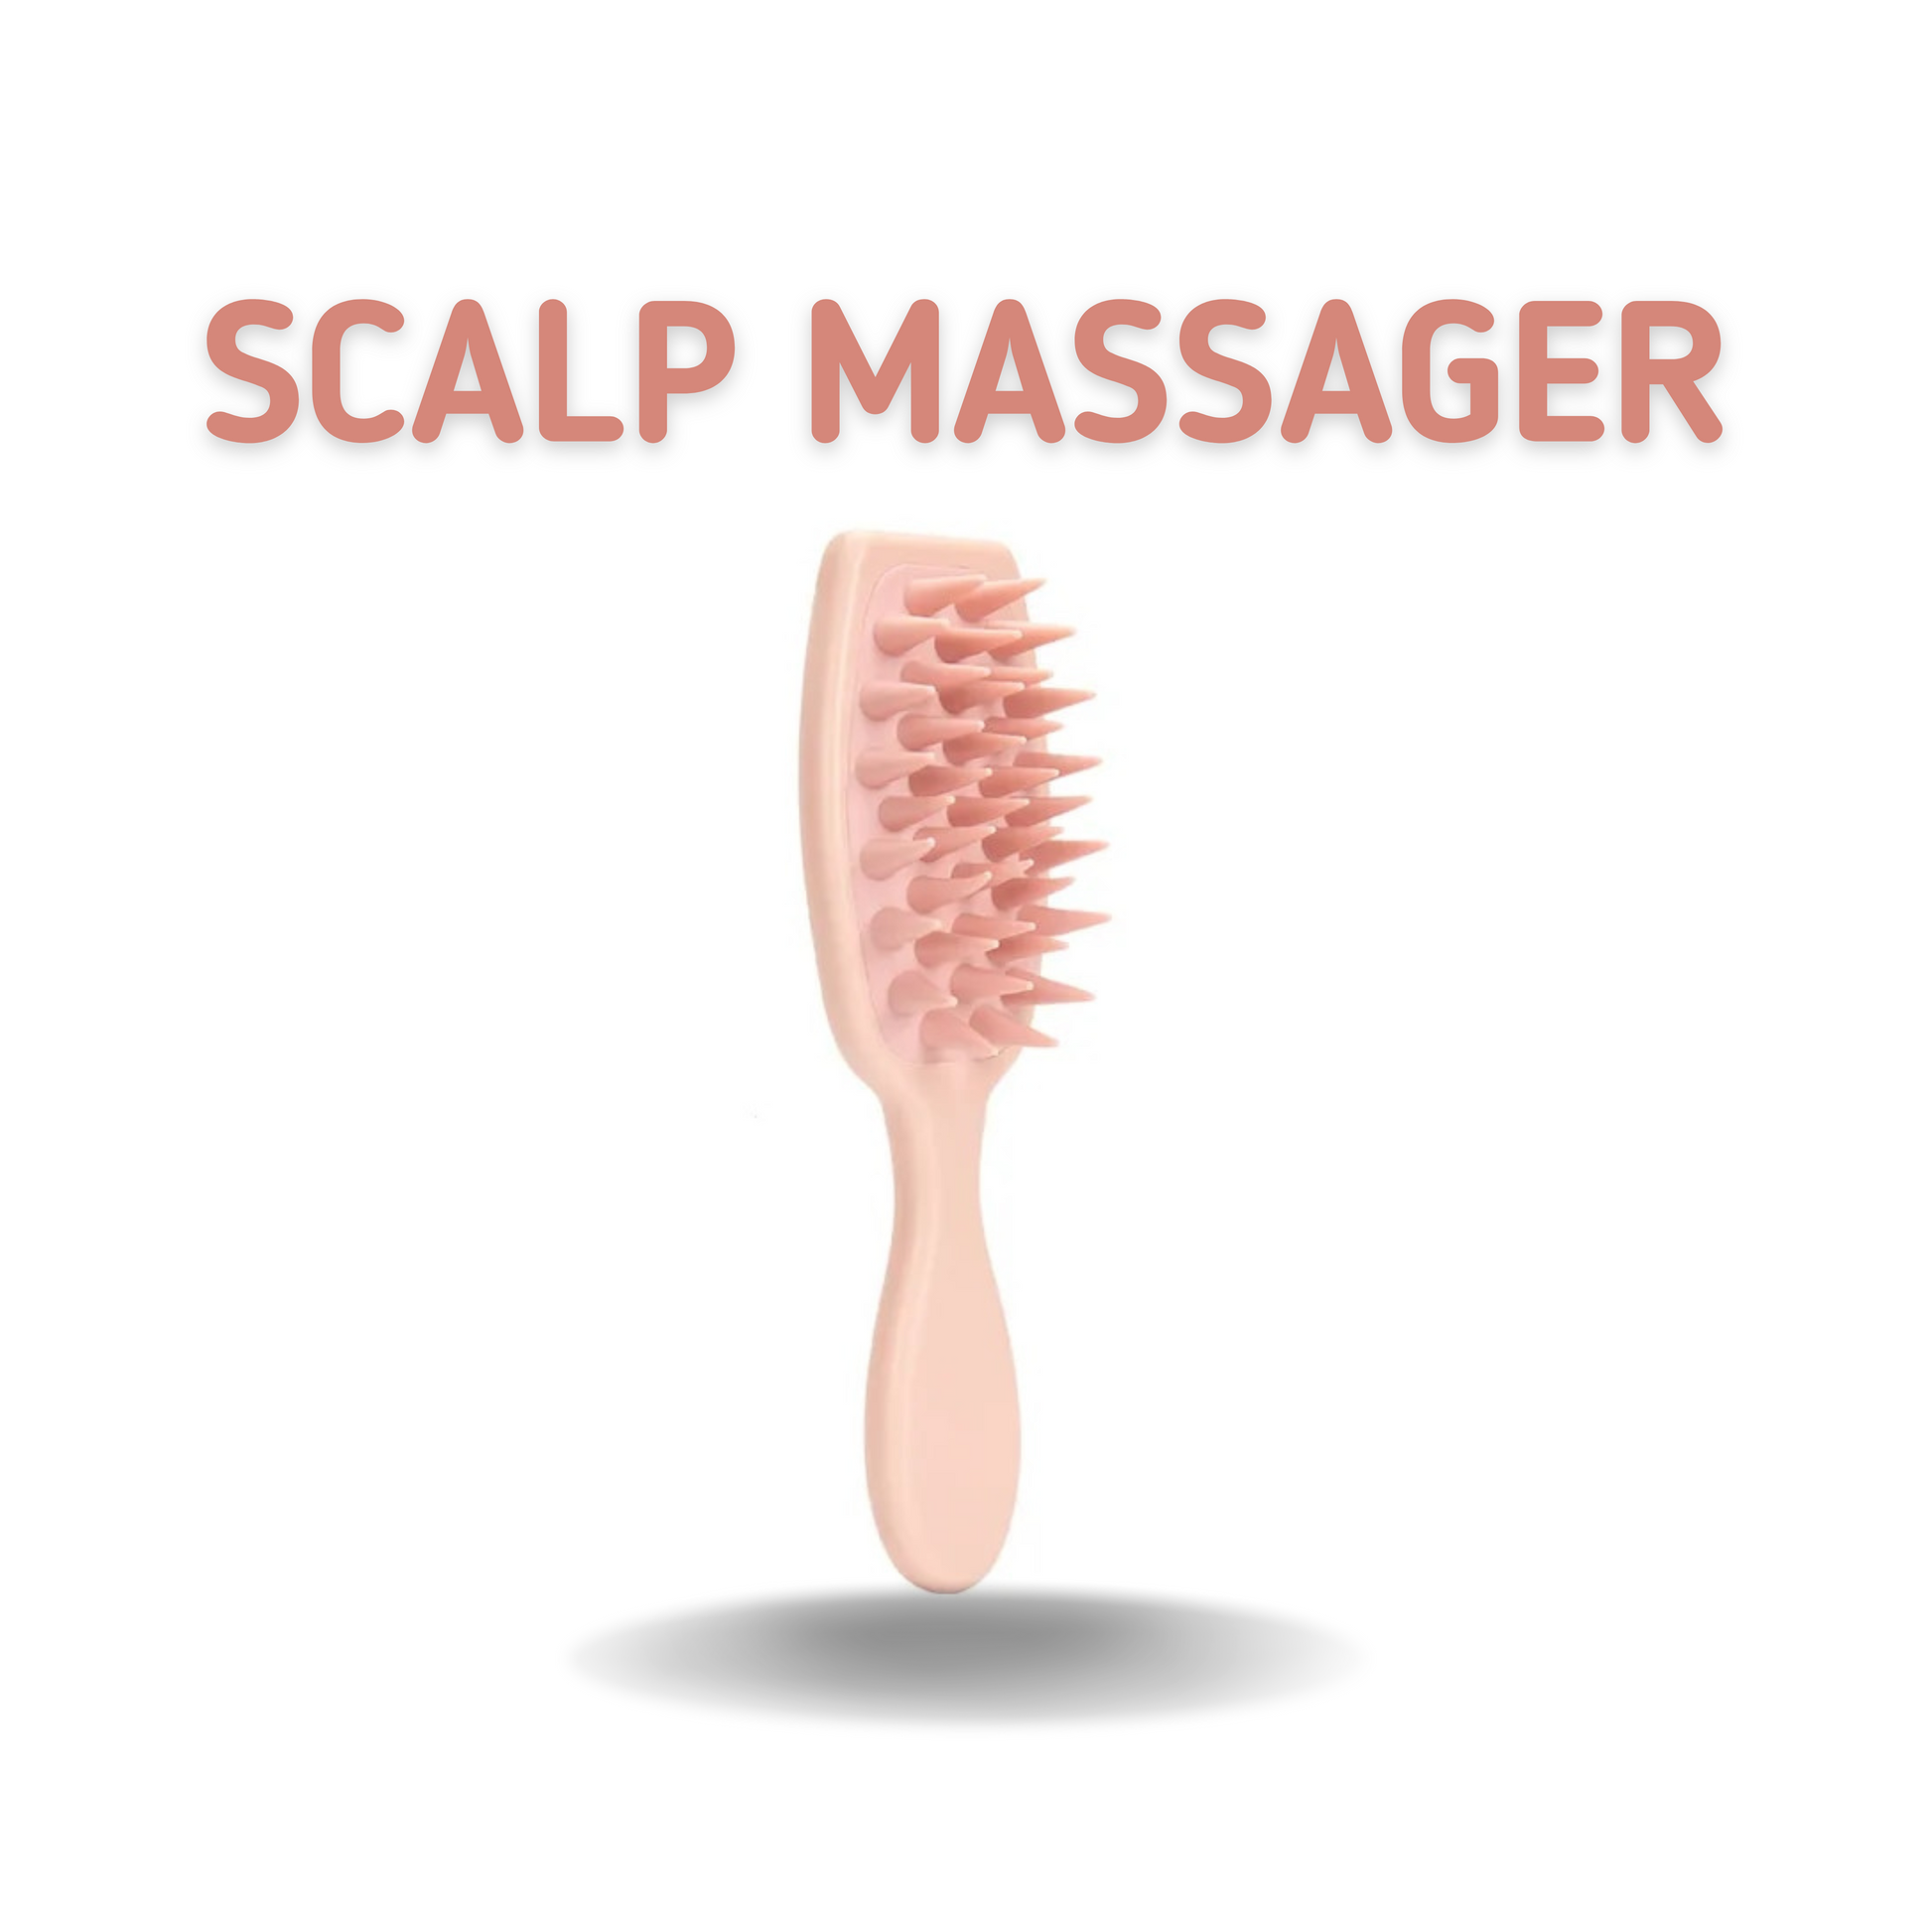    scalp-massager